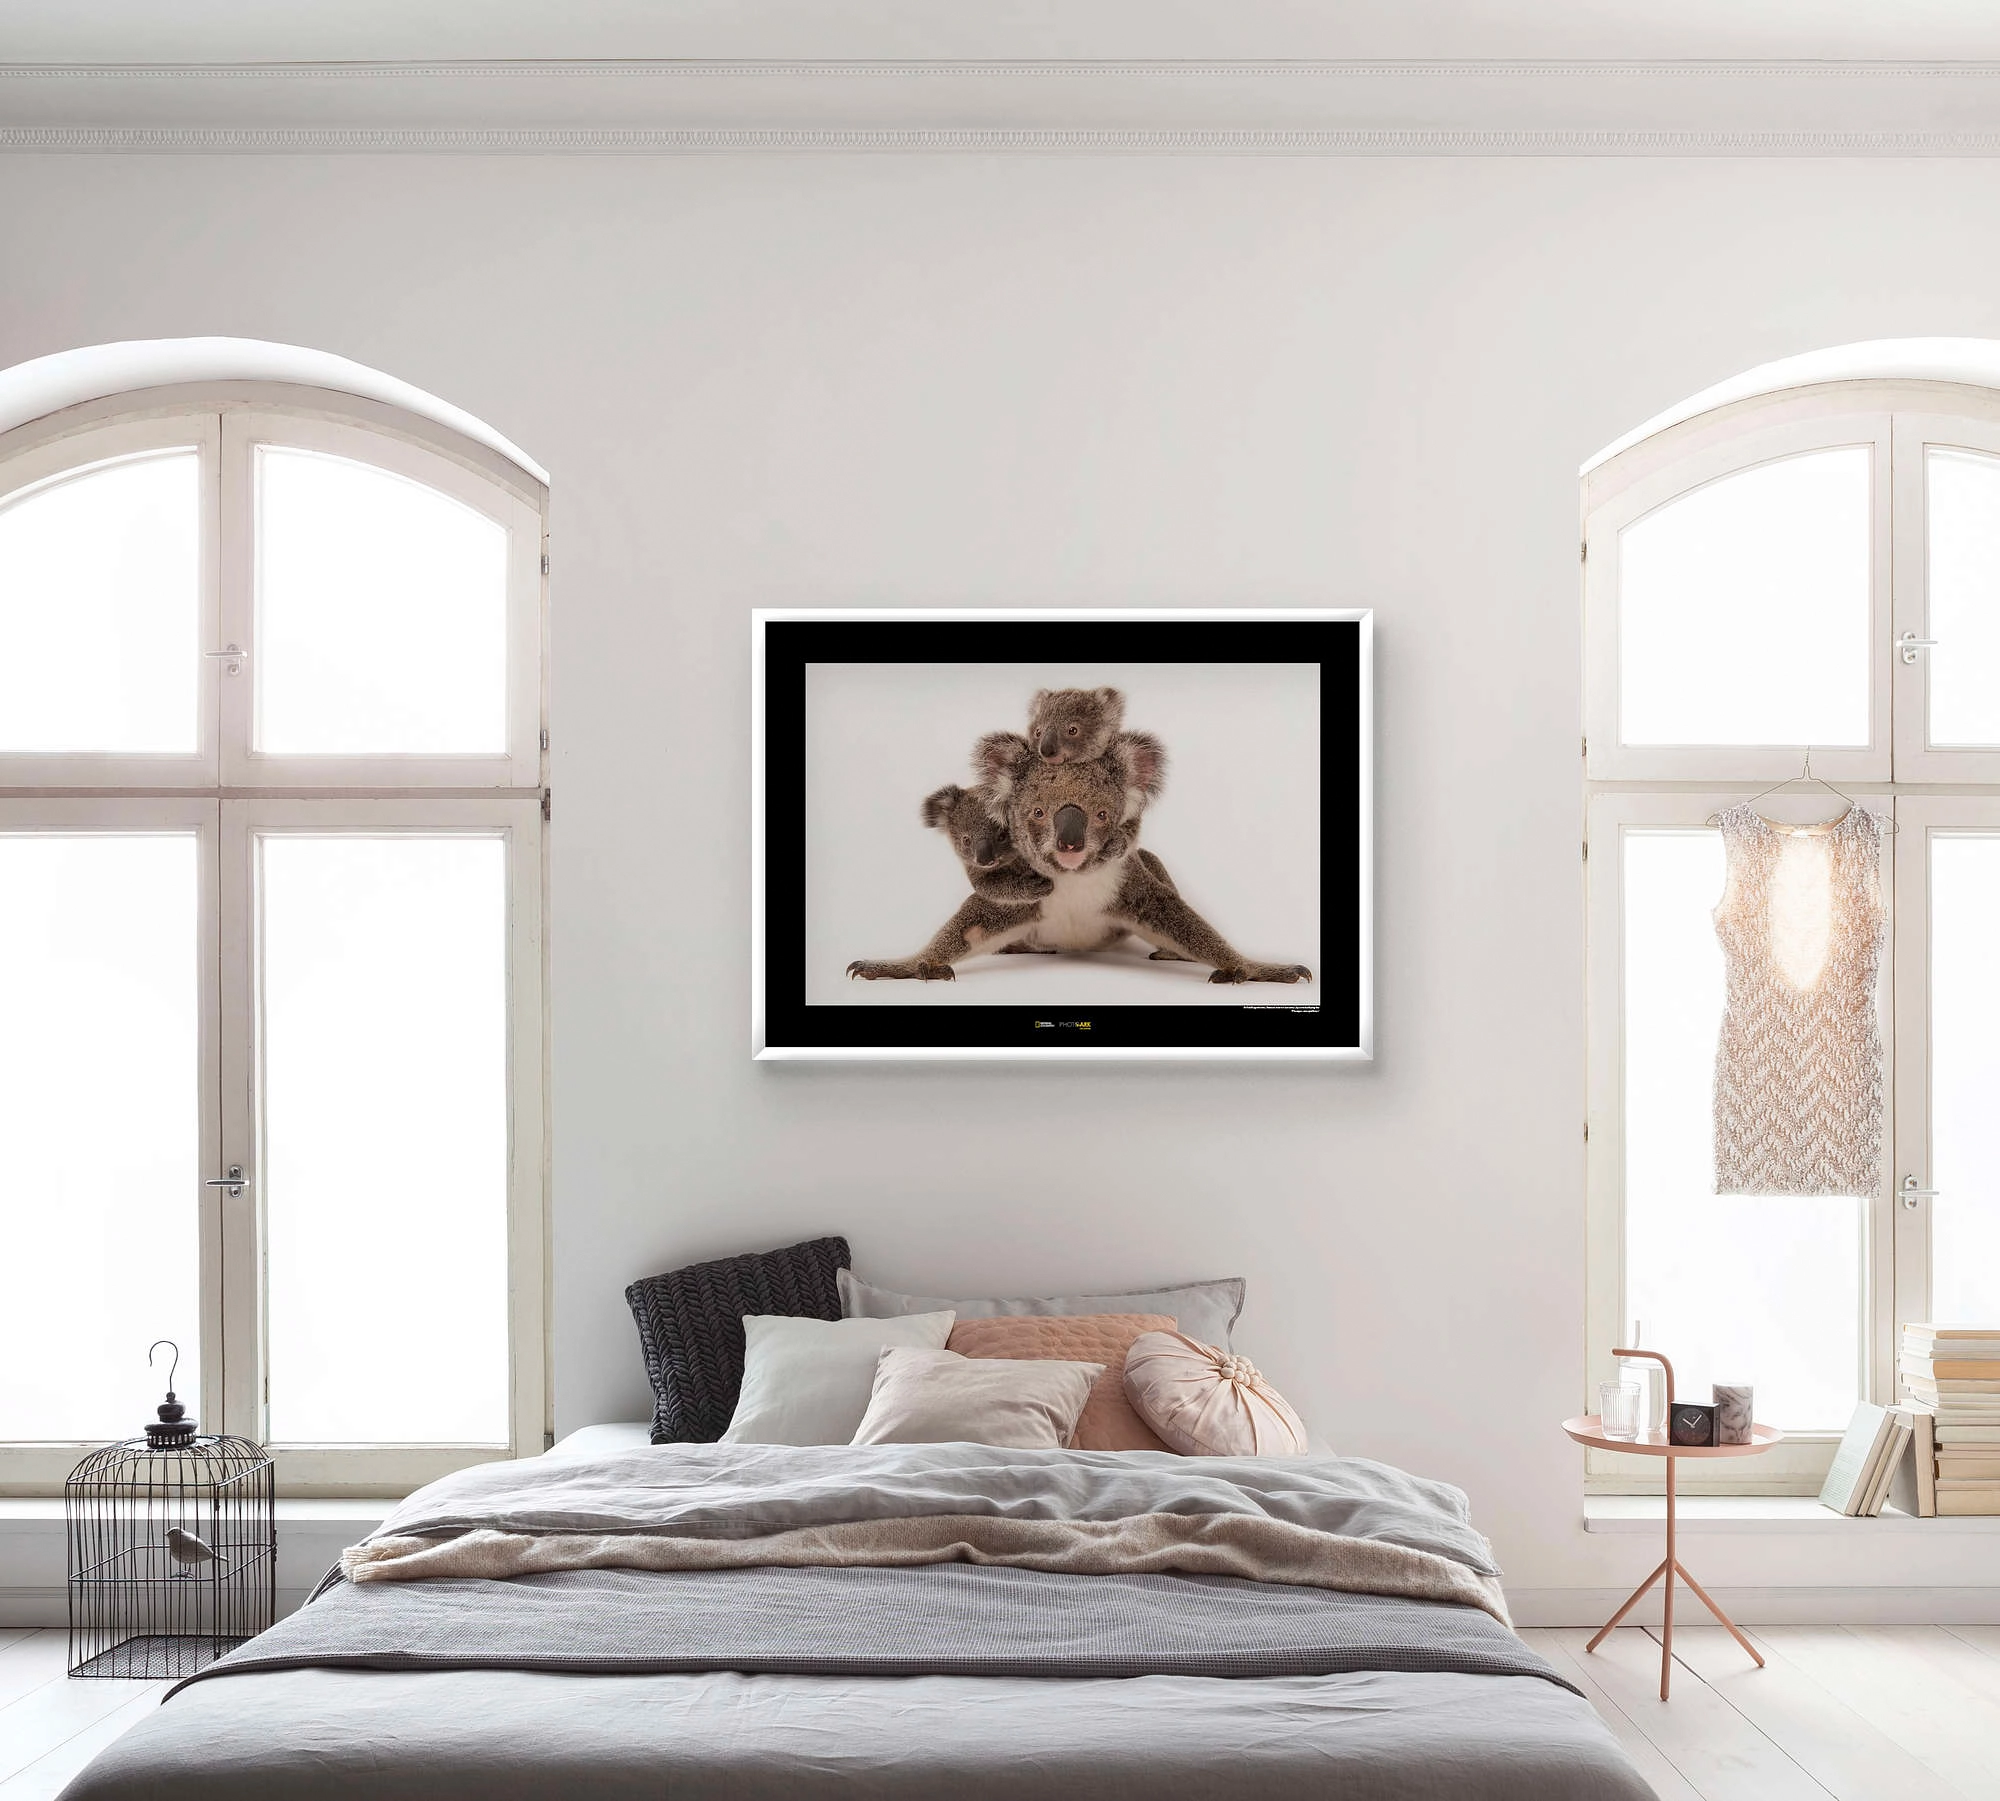 Komar Wandbild Koala 40 x 30 cm kaufen bei OBI